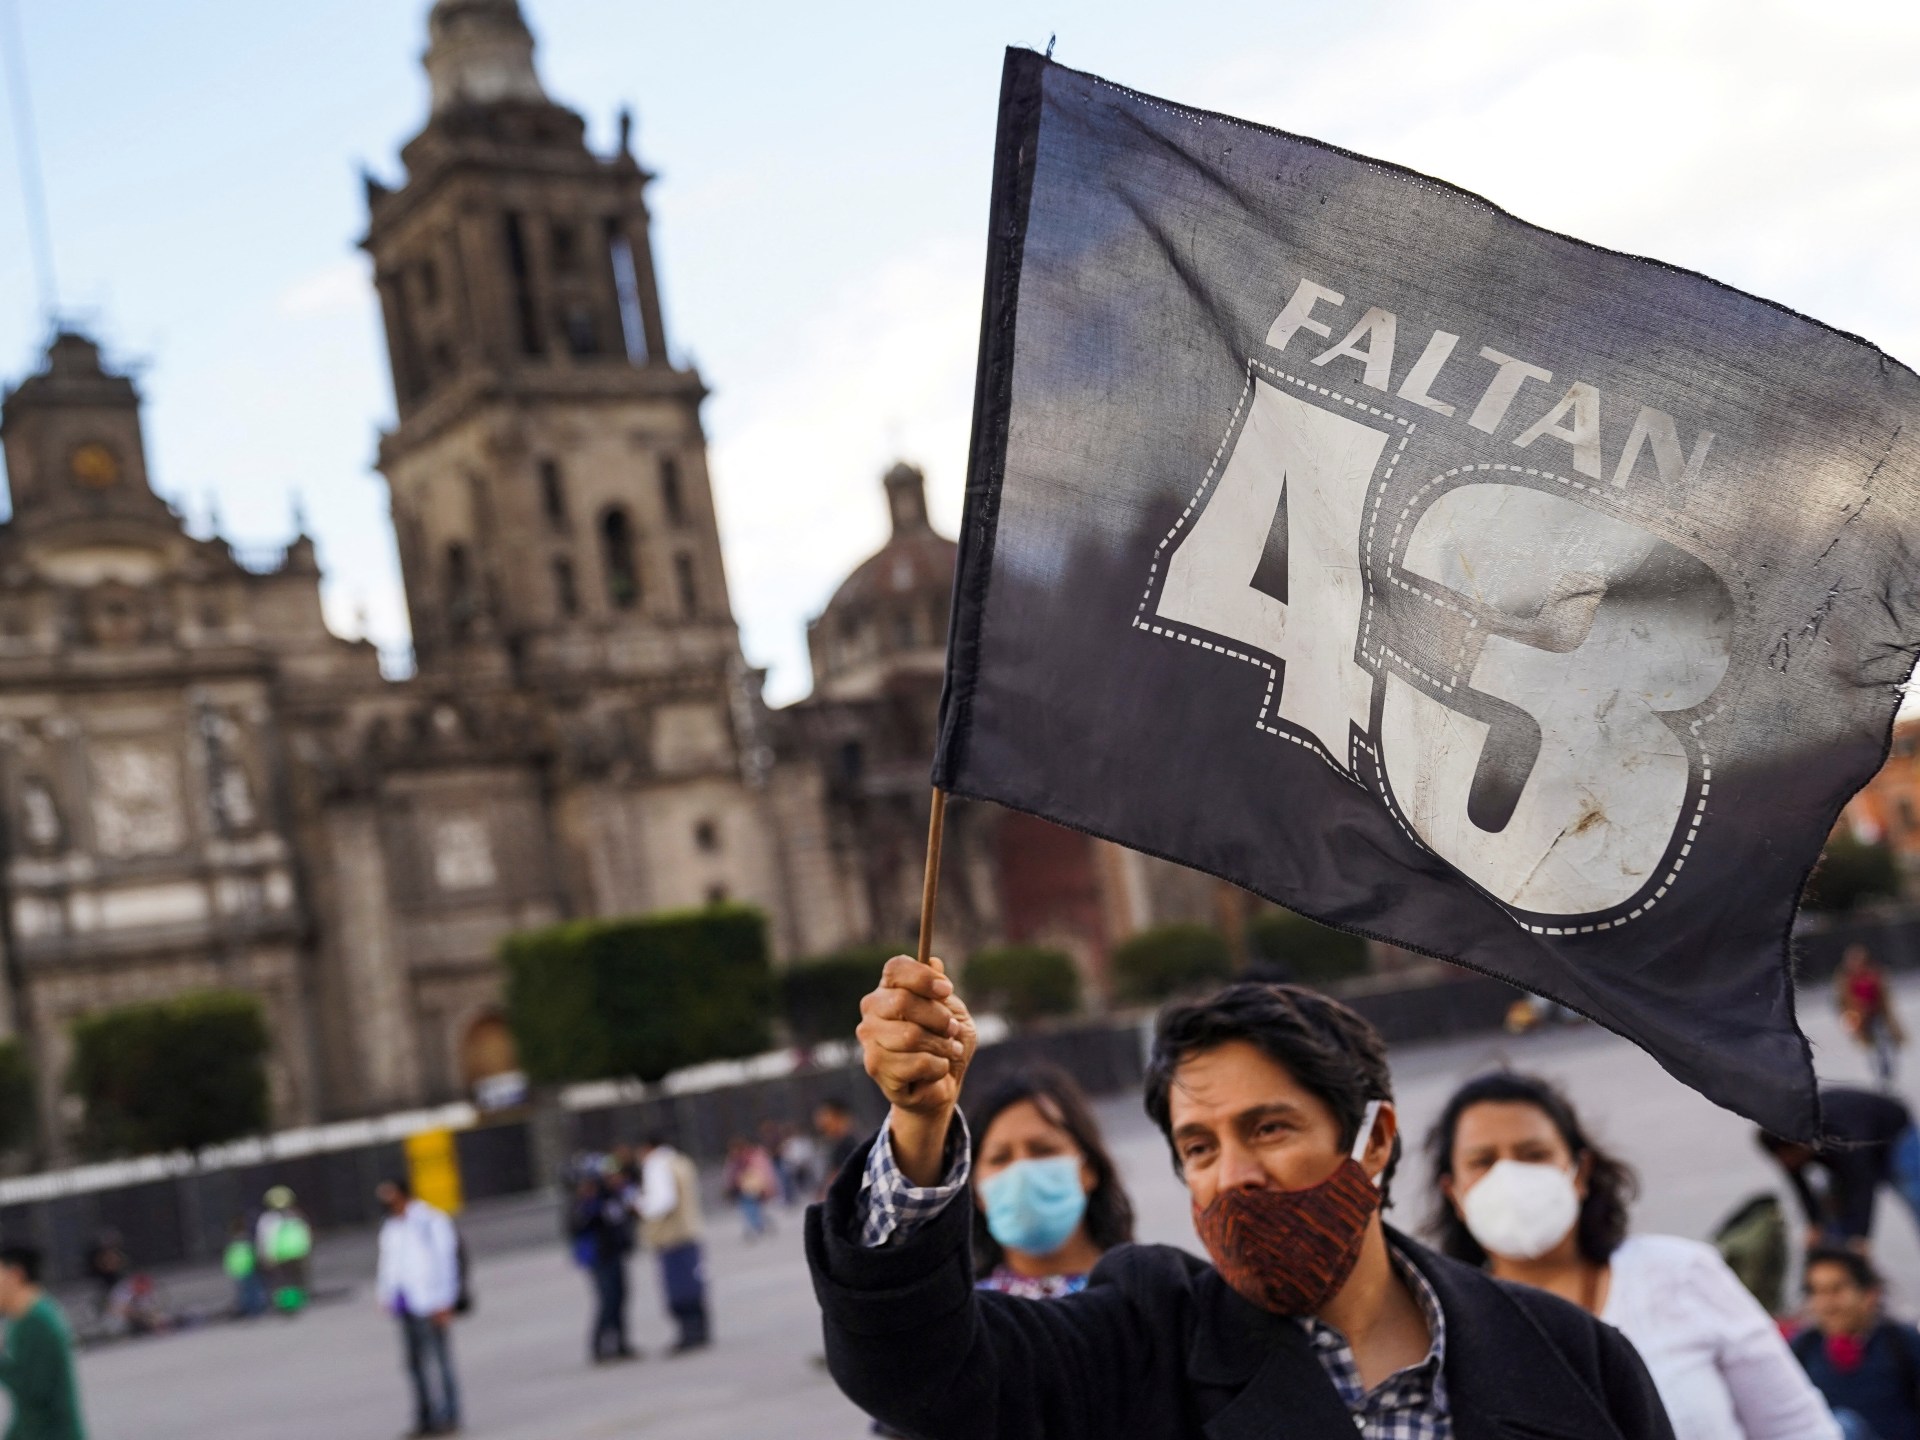 Angkatan Bersenjata Meksiko Memfasilitasi Penghilangan Ayotzinapa: Panel |  Berita Kejahatan